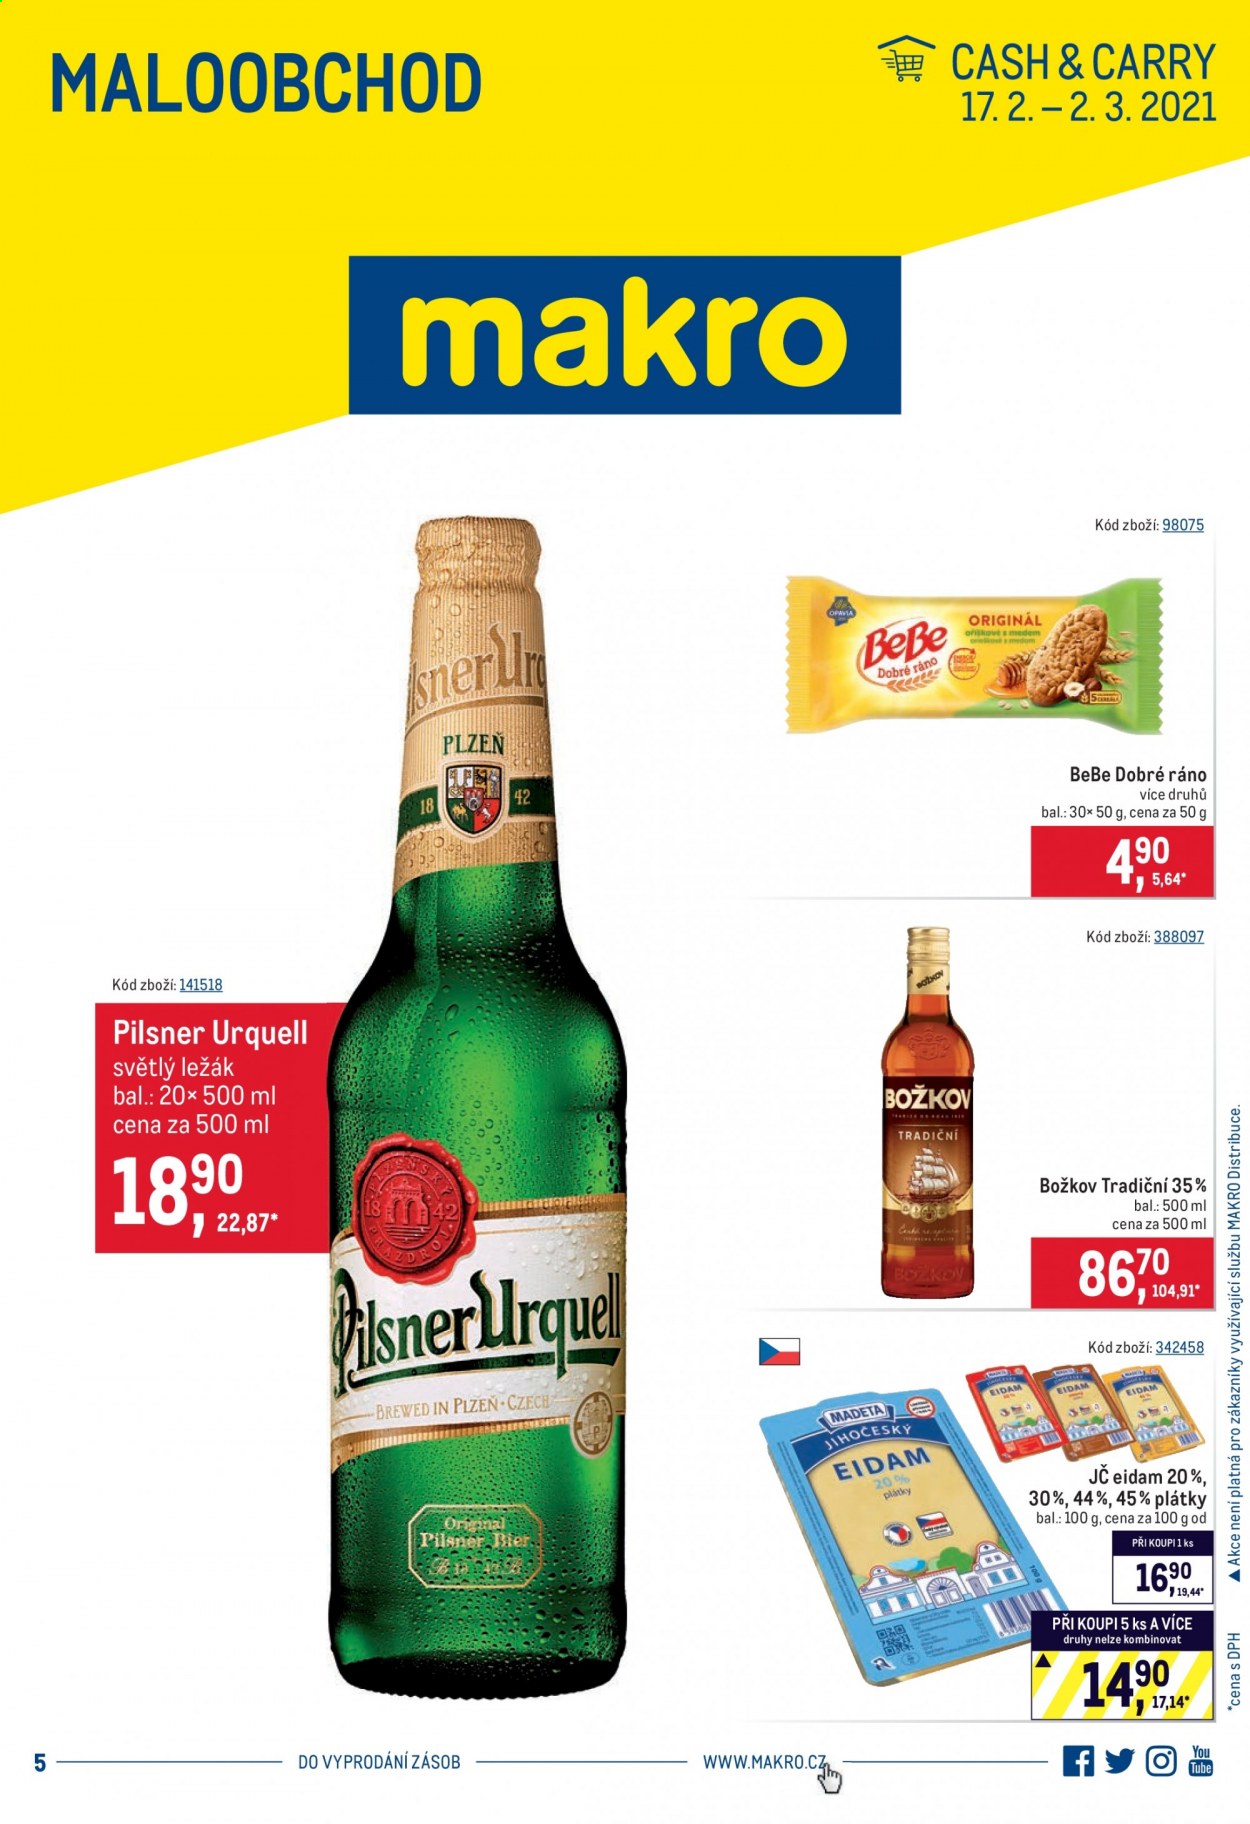 thumbnail - Leták MAKRO - 17.2.2021 - 2.3.2021 - Produkty v akci - Pilsner Urquell, pivo, alkohol, Božkov, BeBe, BeBe Dobré ráno, eidam. Strana 1.